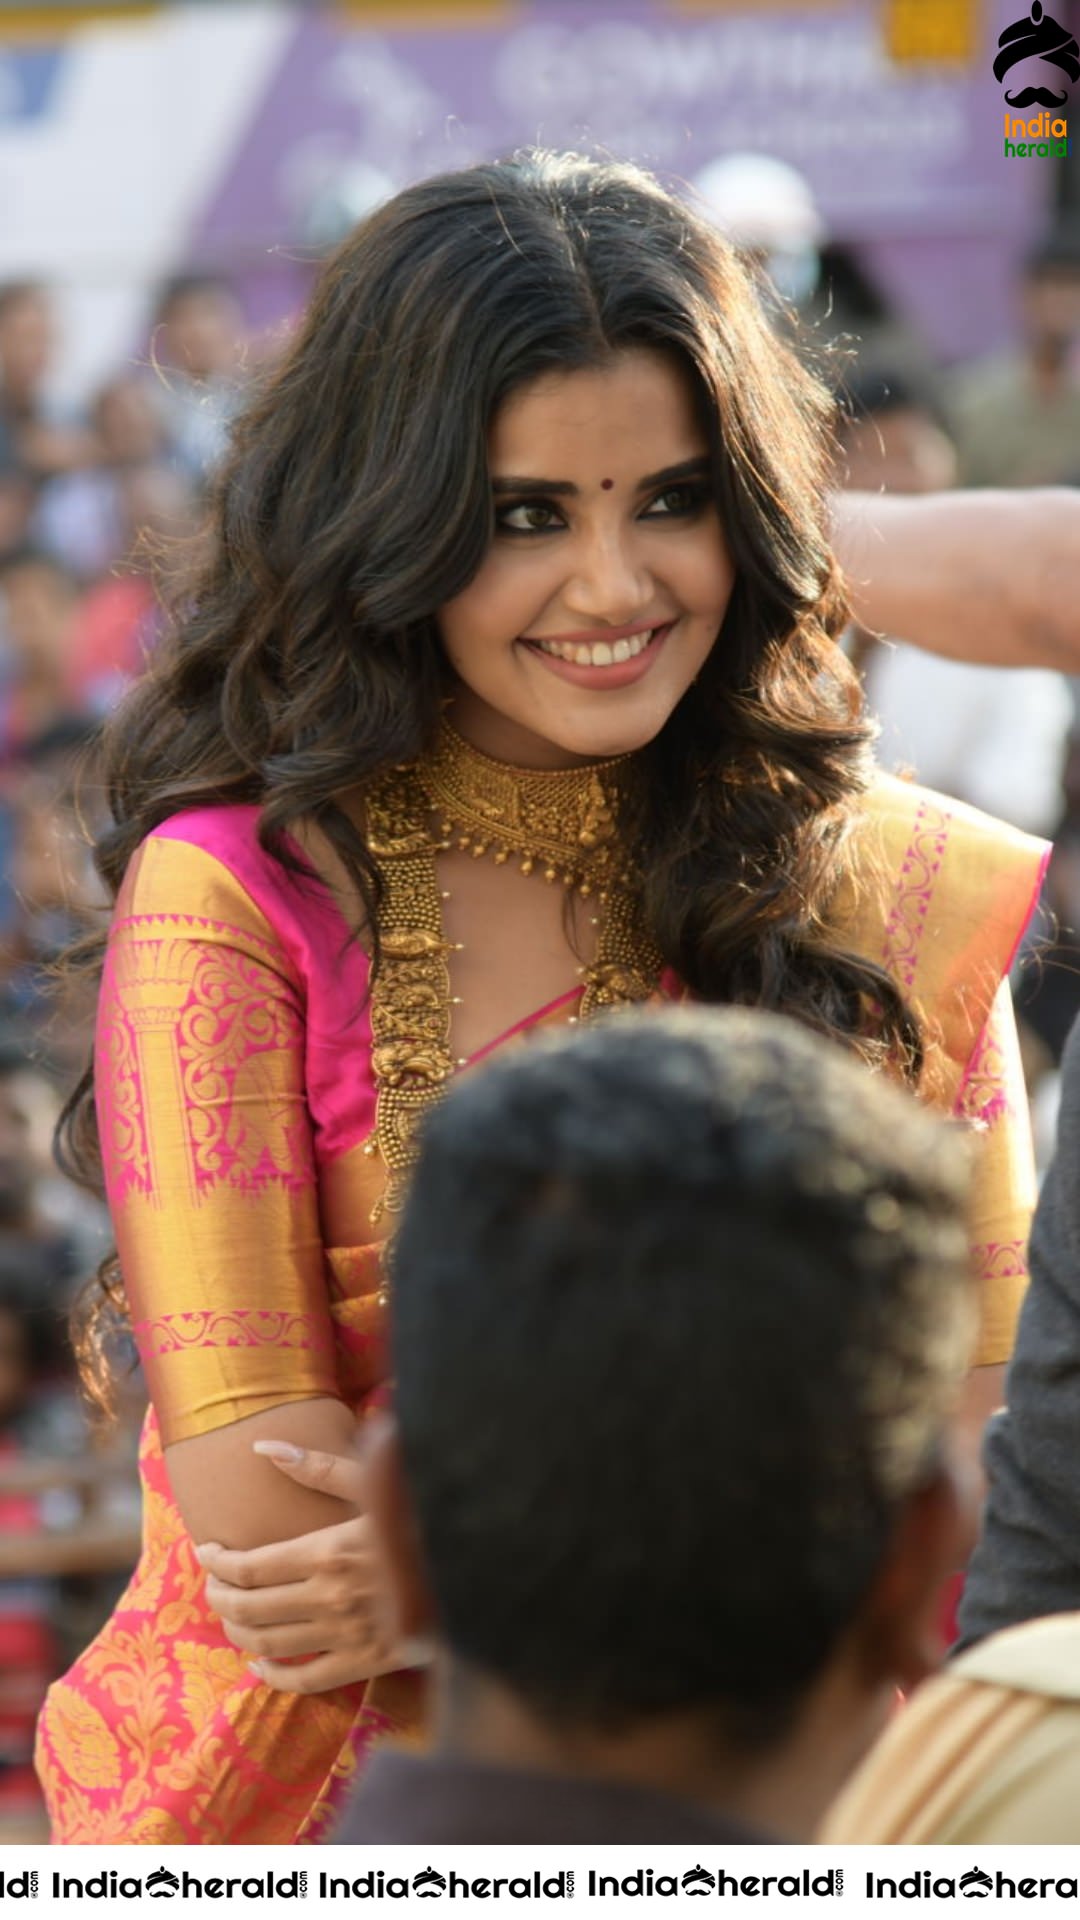 Latest Hot Compilation of Photos of Anupama Parameswaran in Saree Set 1